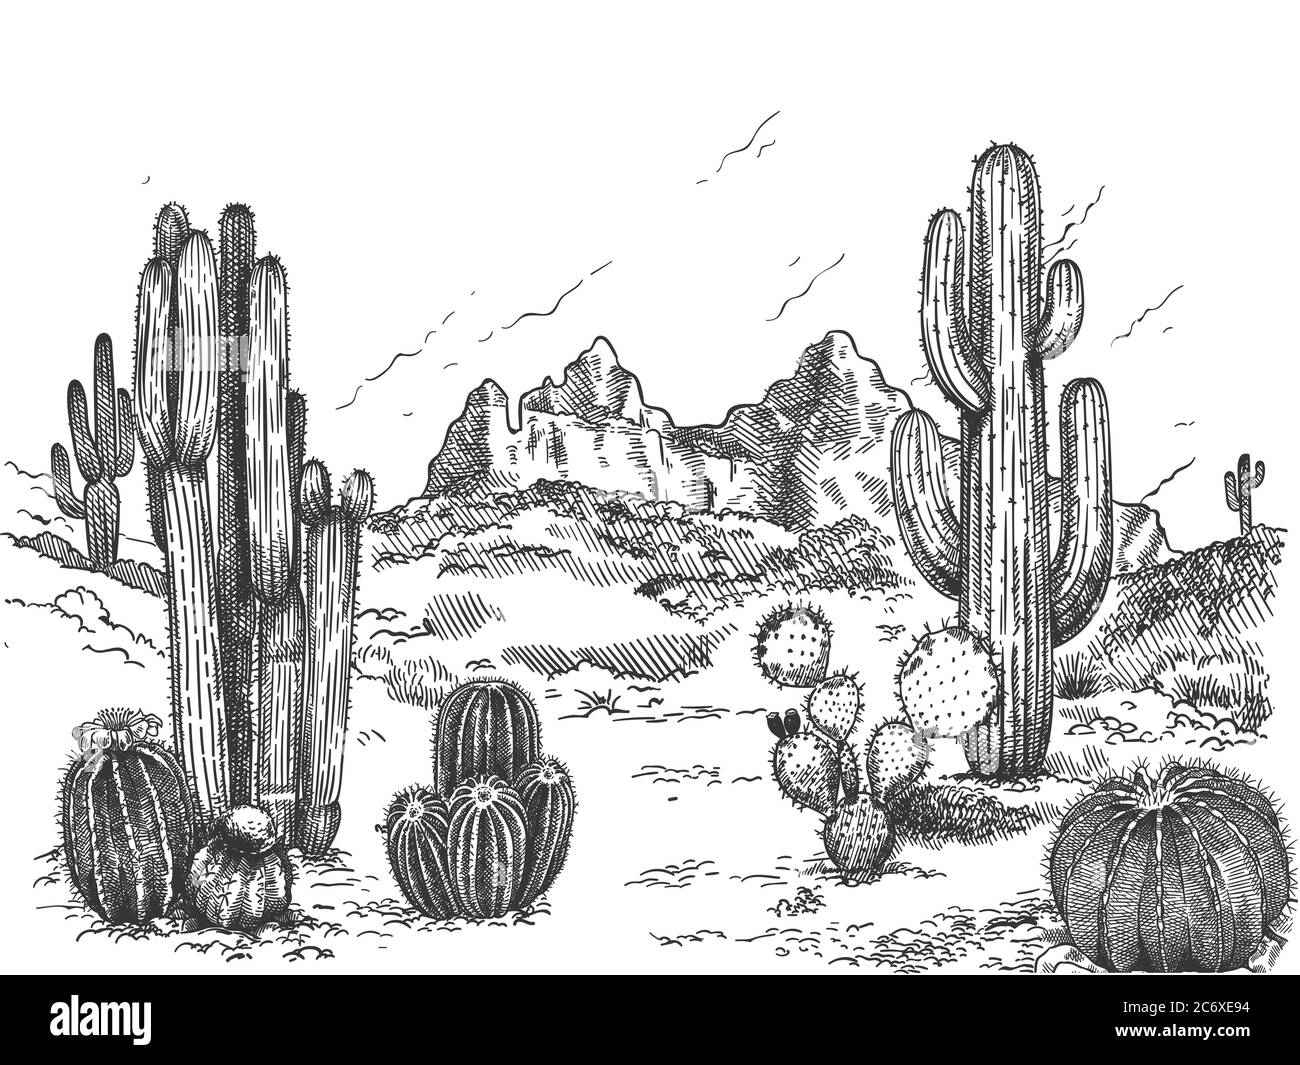 Wüstenlandschaft. Handgezeichnete mexikanische Prärie mit Pflanzen und blühenden Kakteen, stachelige Sukkulenten Natur wilden Westen Skizze Vektor Hintergrund Stock Vektor